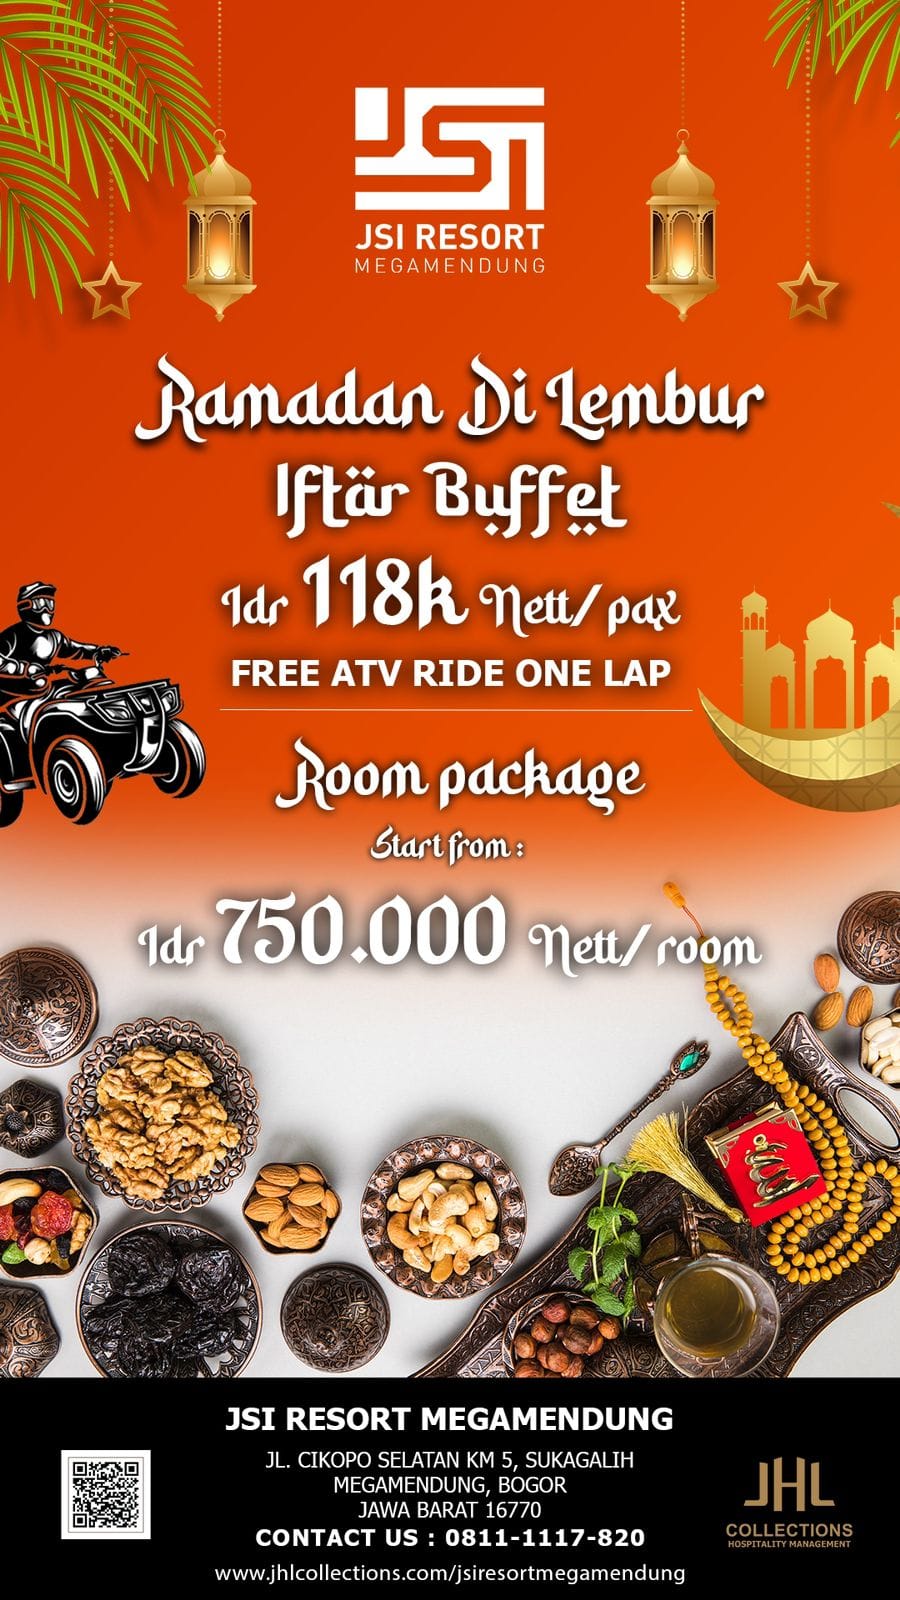 Ramadhan Lembur Iftar Buffet Jsi Resort Megamendung Bogor